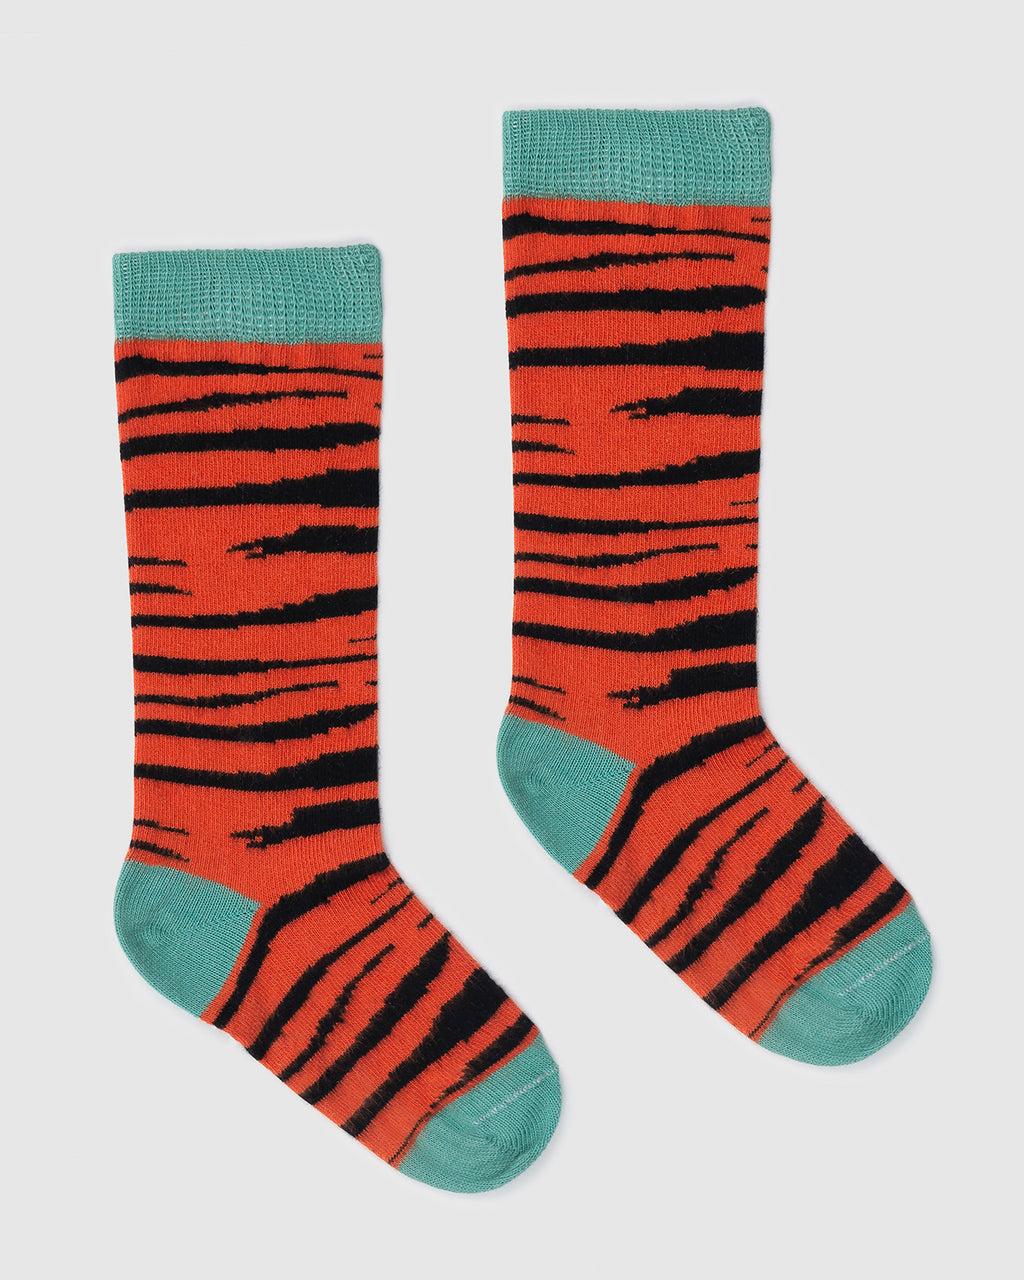 Tiger Skin Socks